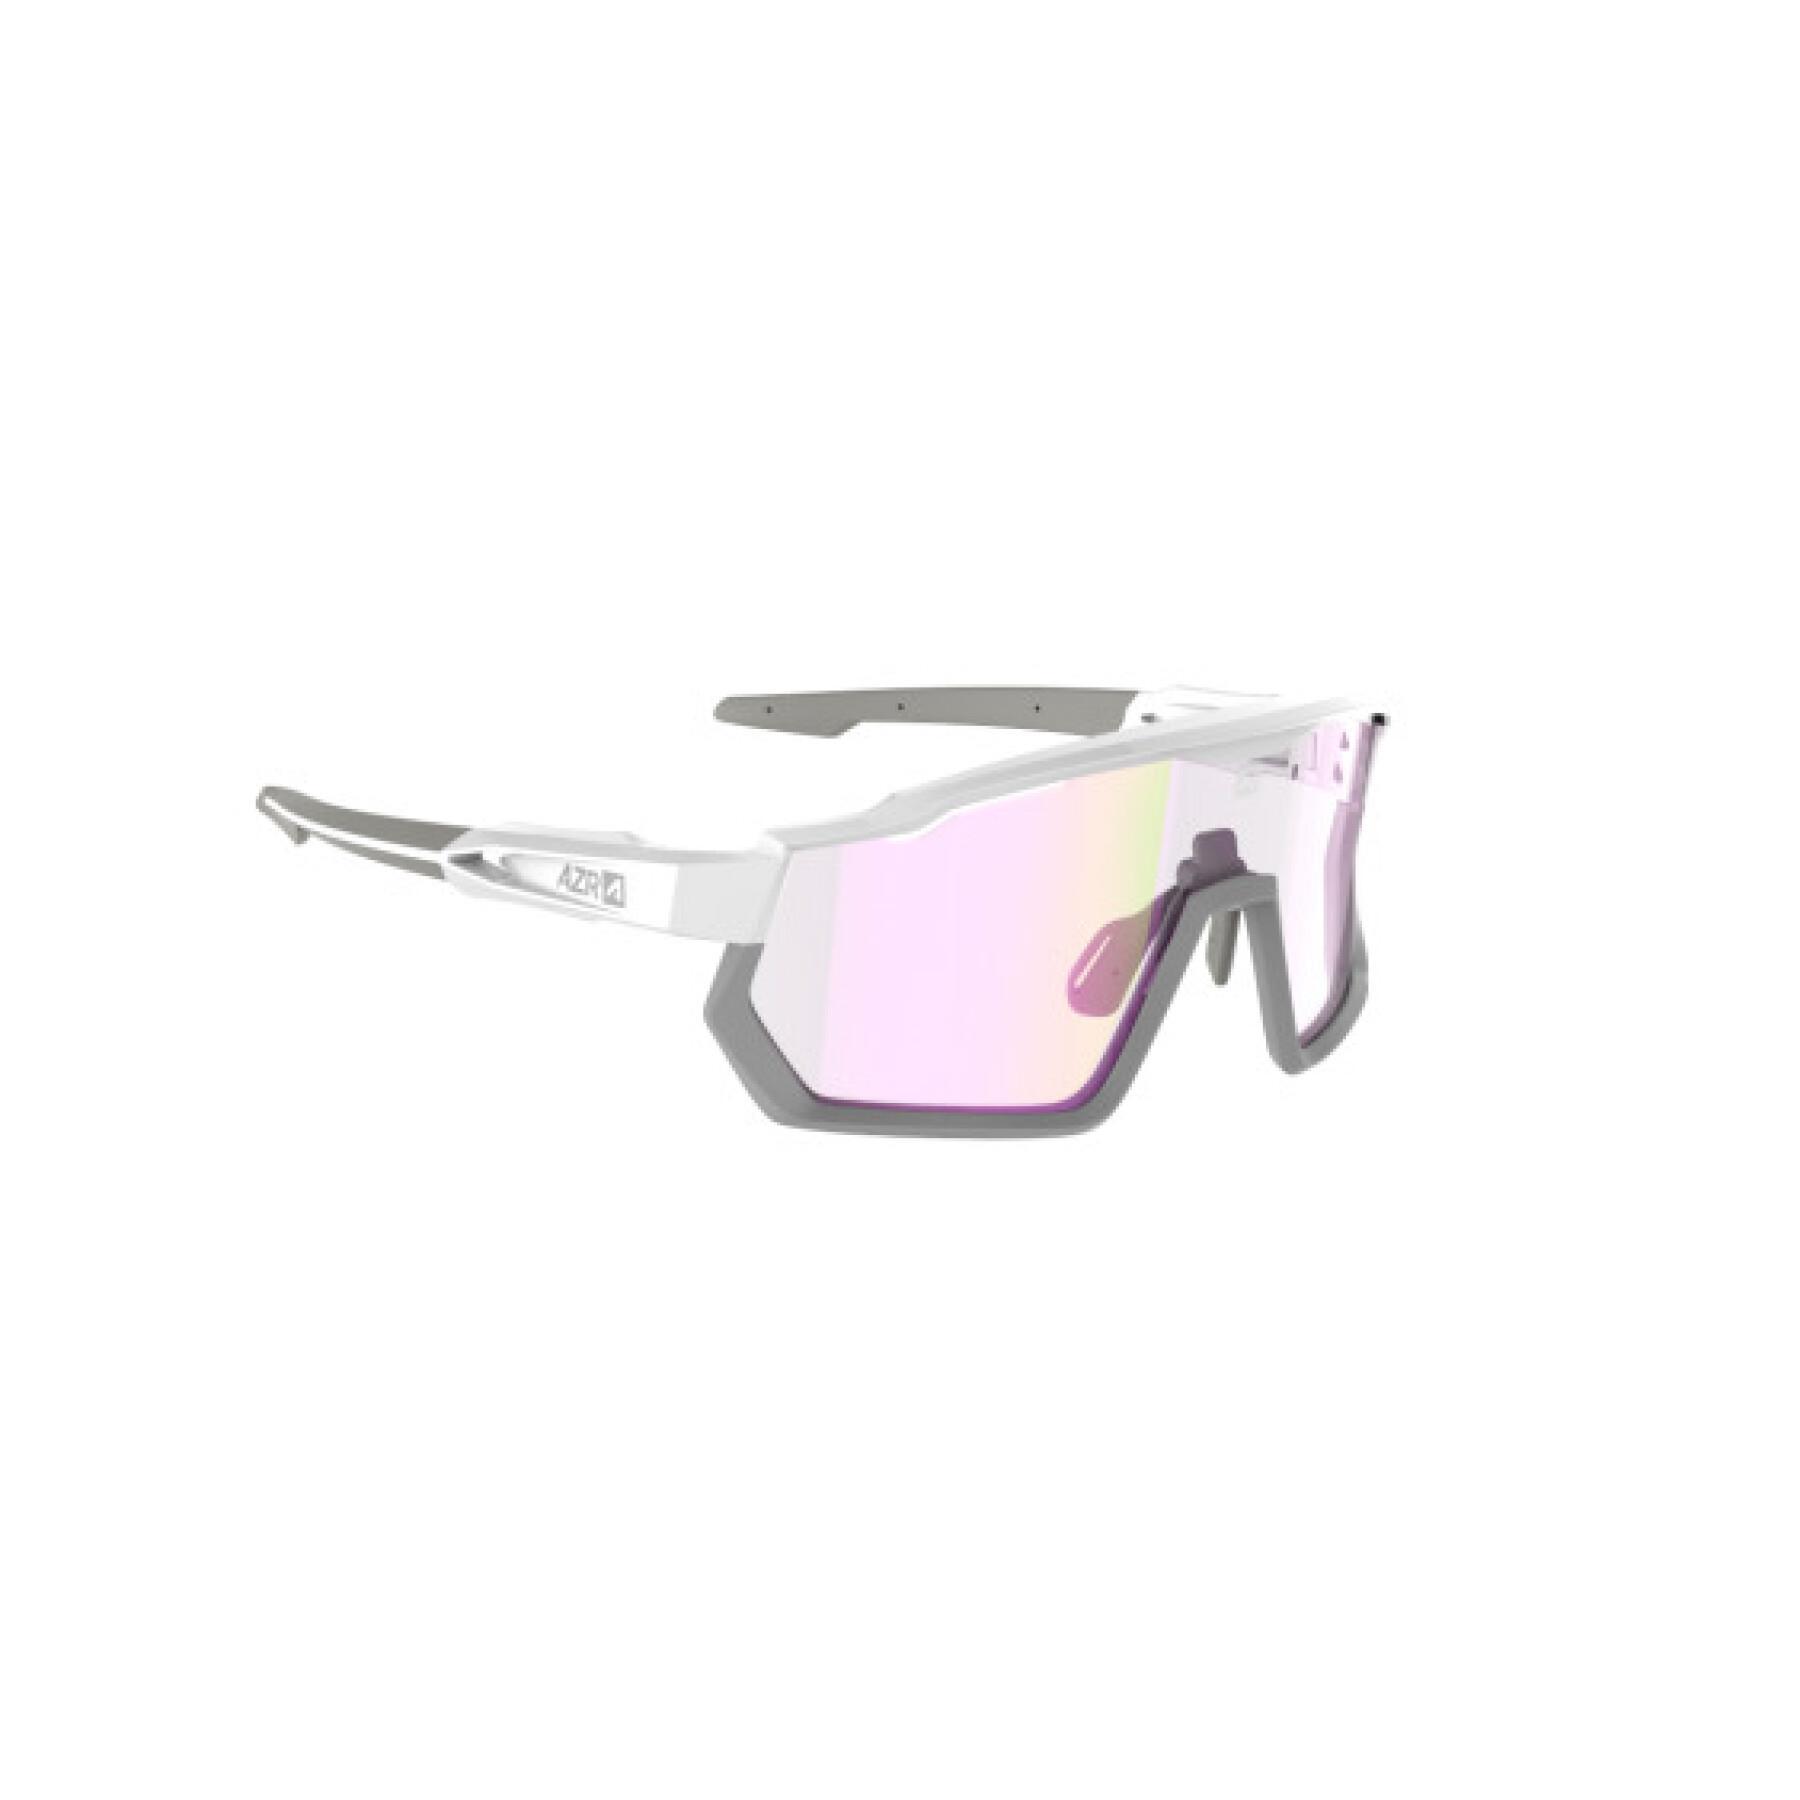 Brillen mit photochromatischem Schirm Kategorie 1 bis 3 AZR Kromic Pro Race Rx